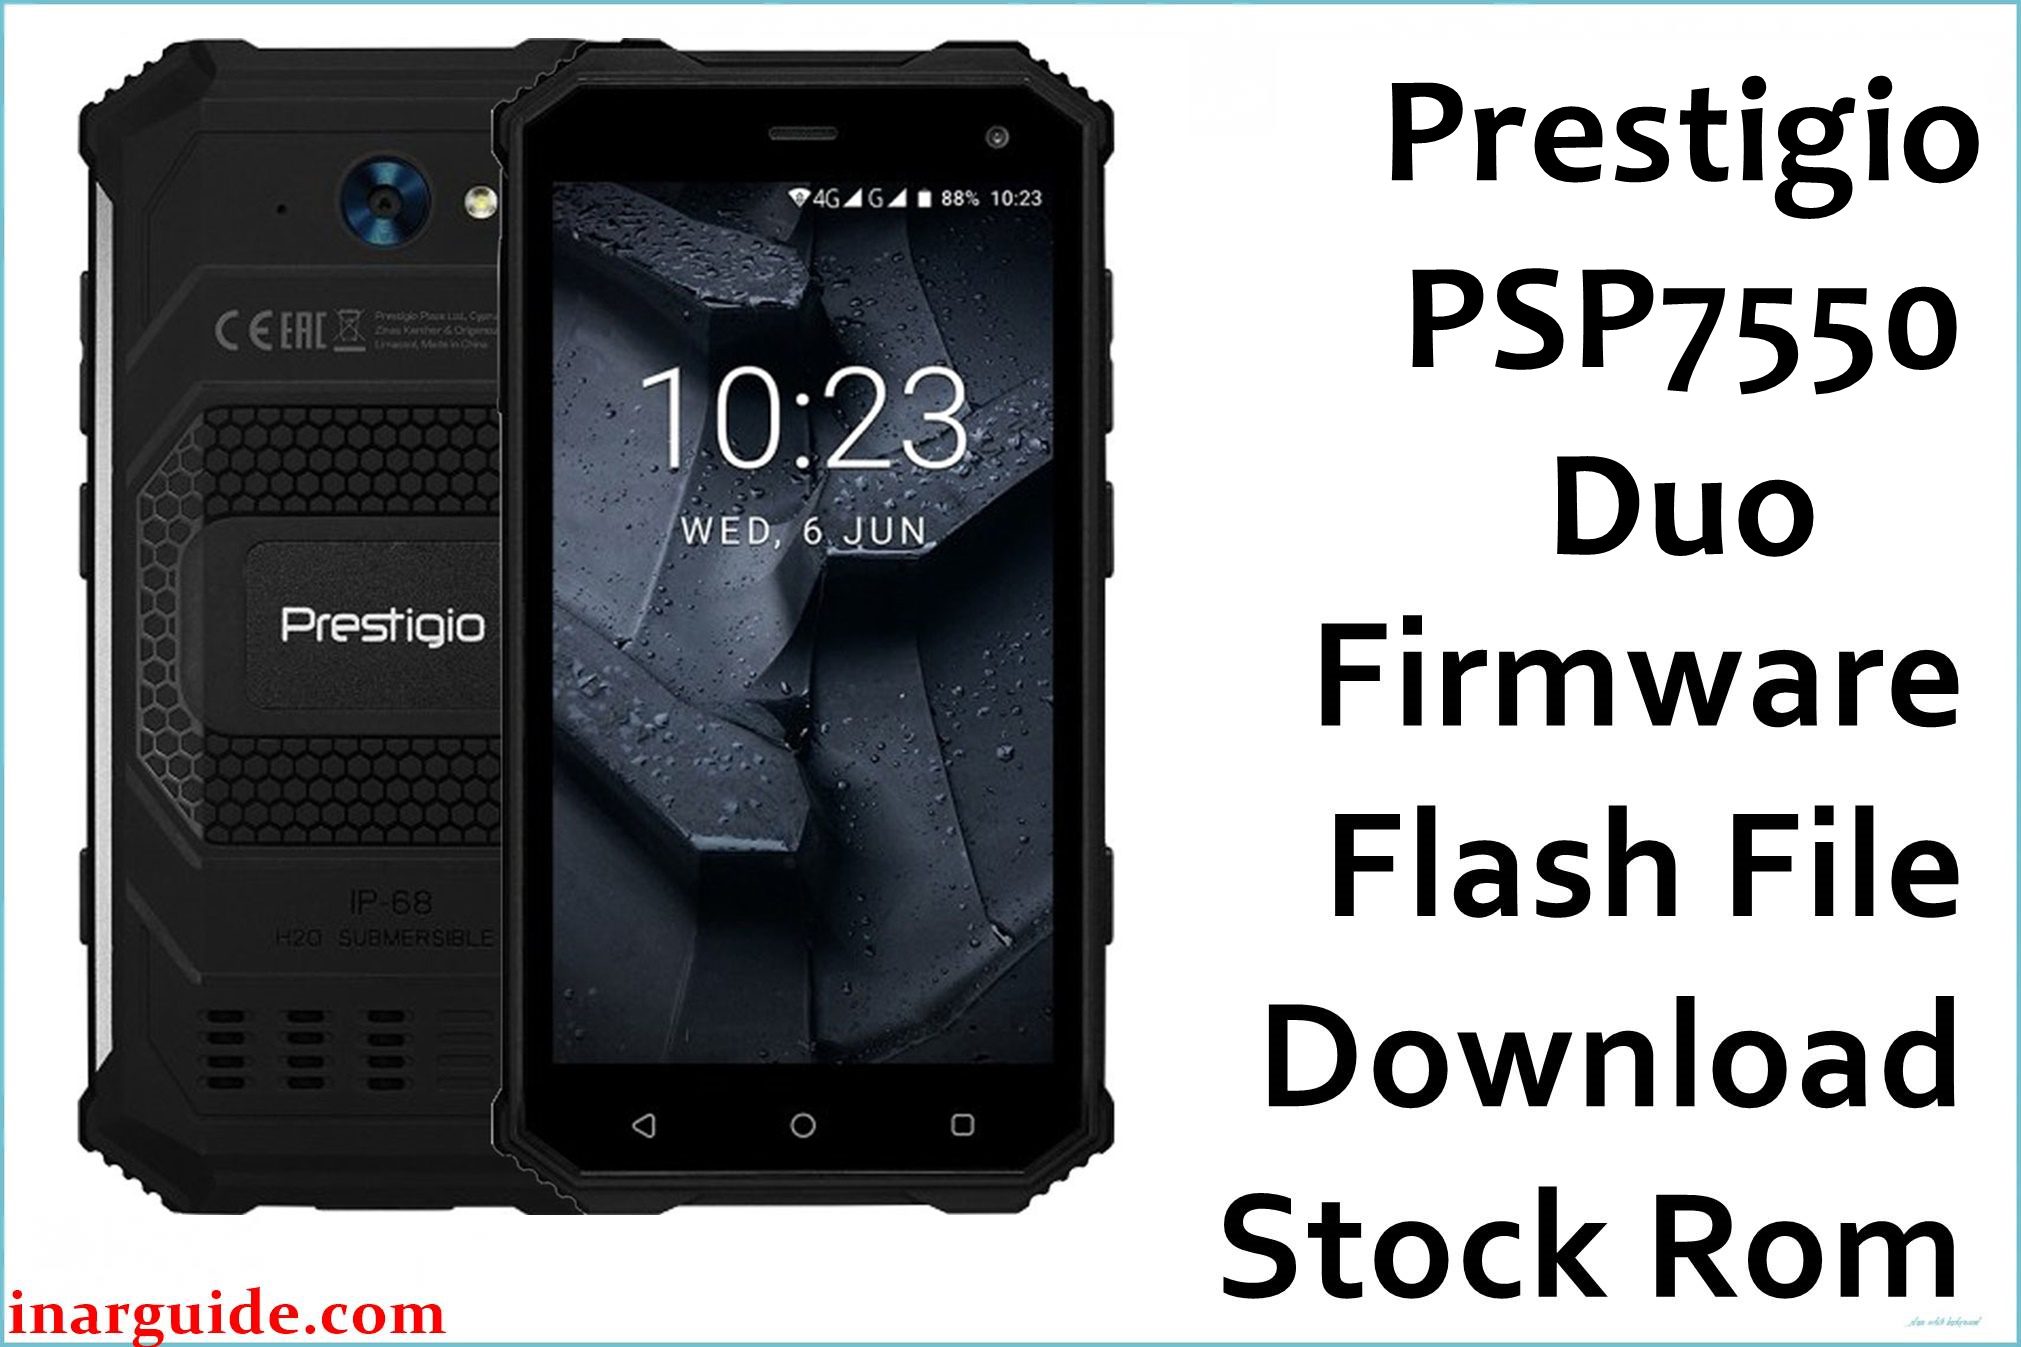 Prestigio PSP7550 Duo